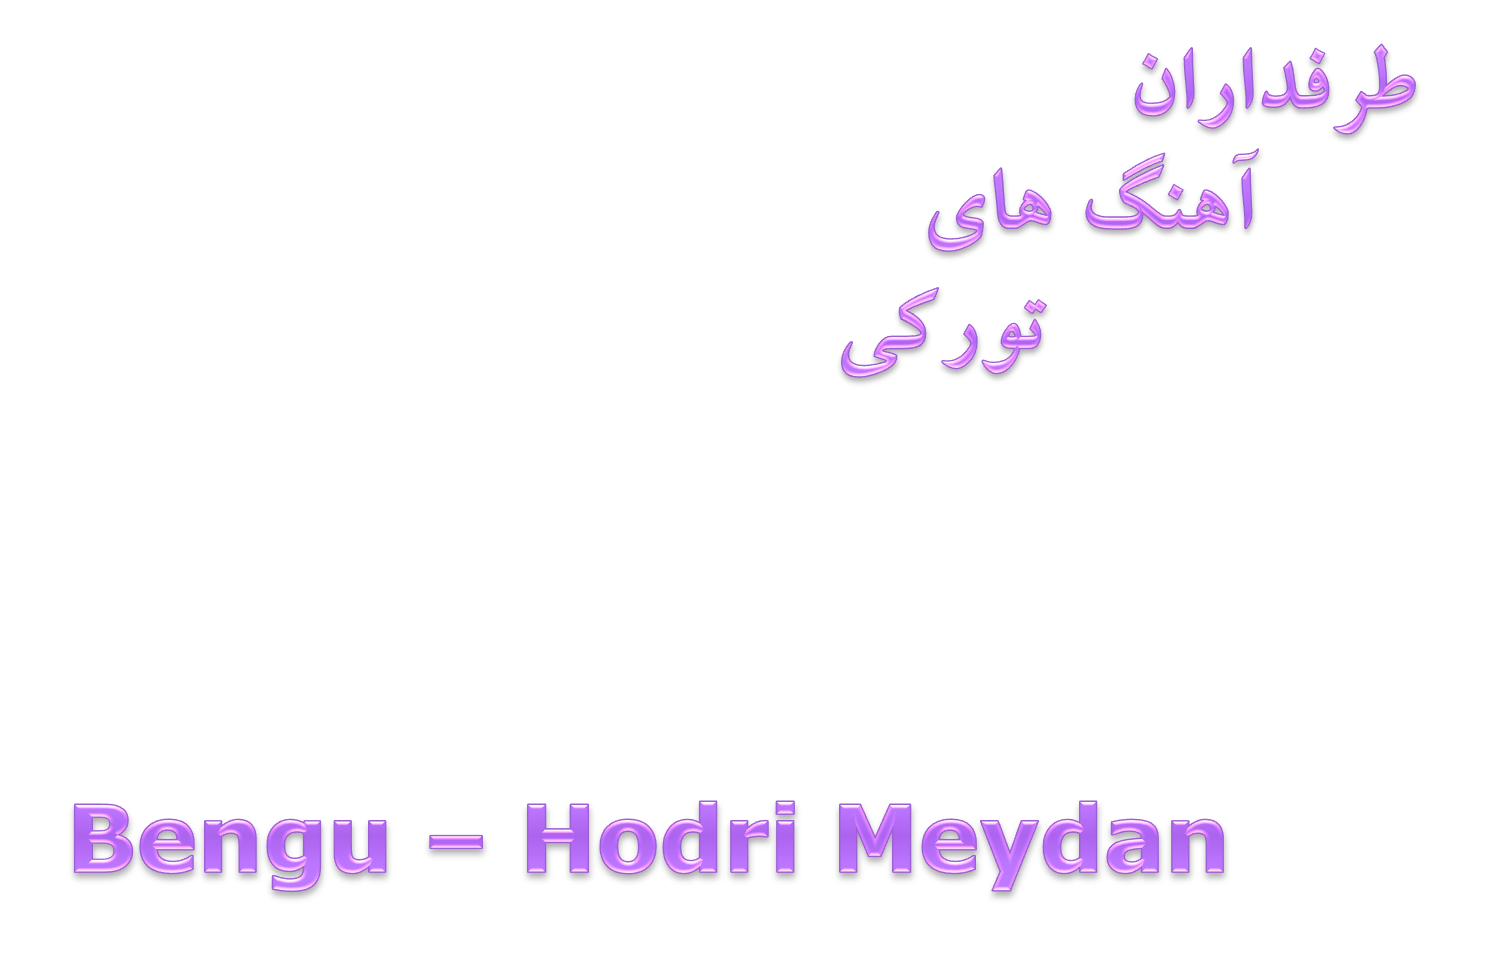 دانلود آهنگ جدید Bengu به نام Hodri Meydan